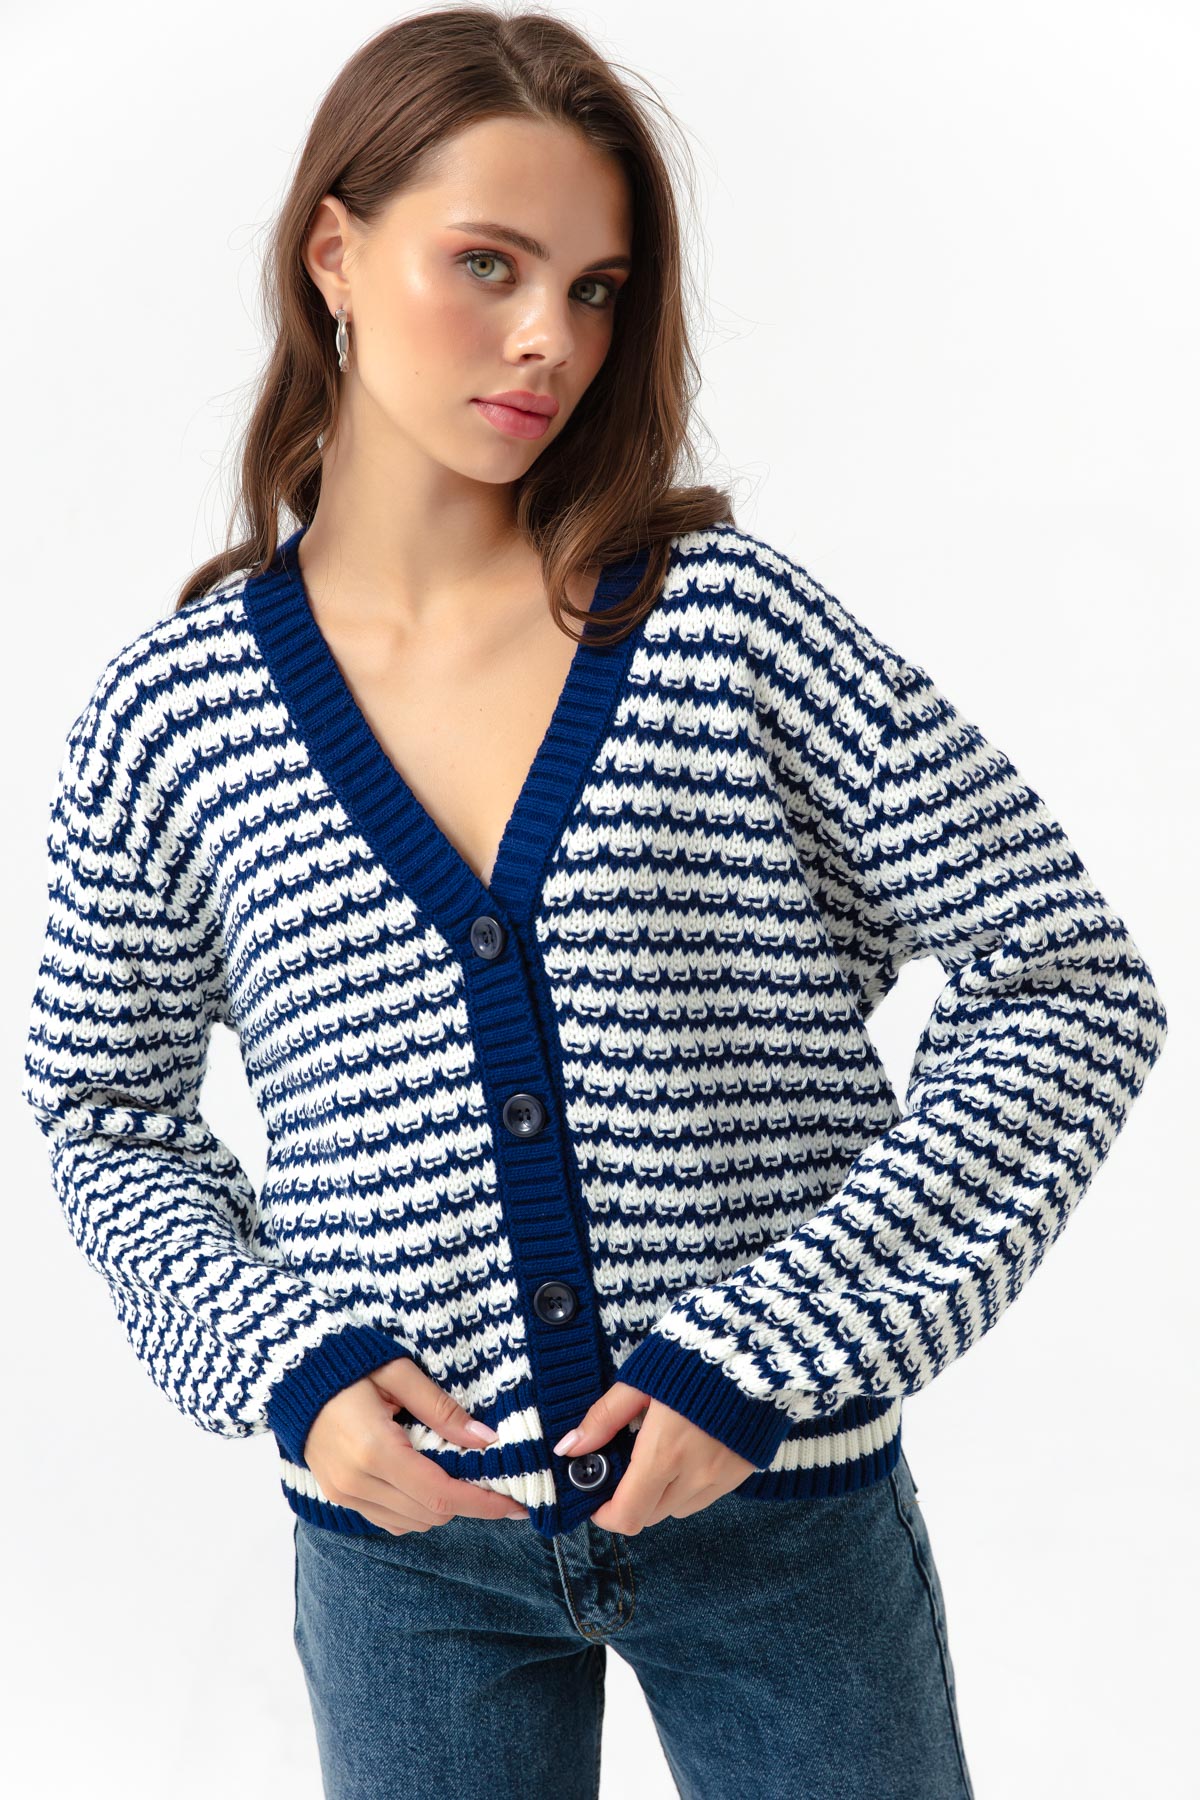 Women's Navy Blue Knitwear Cardigan